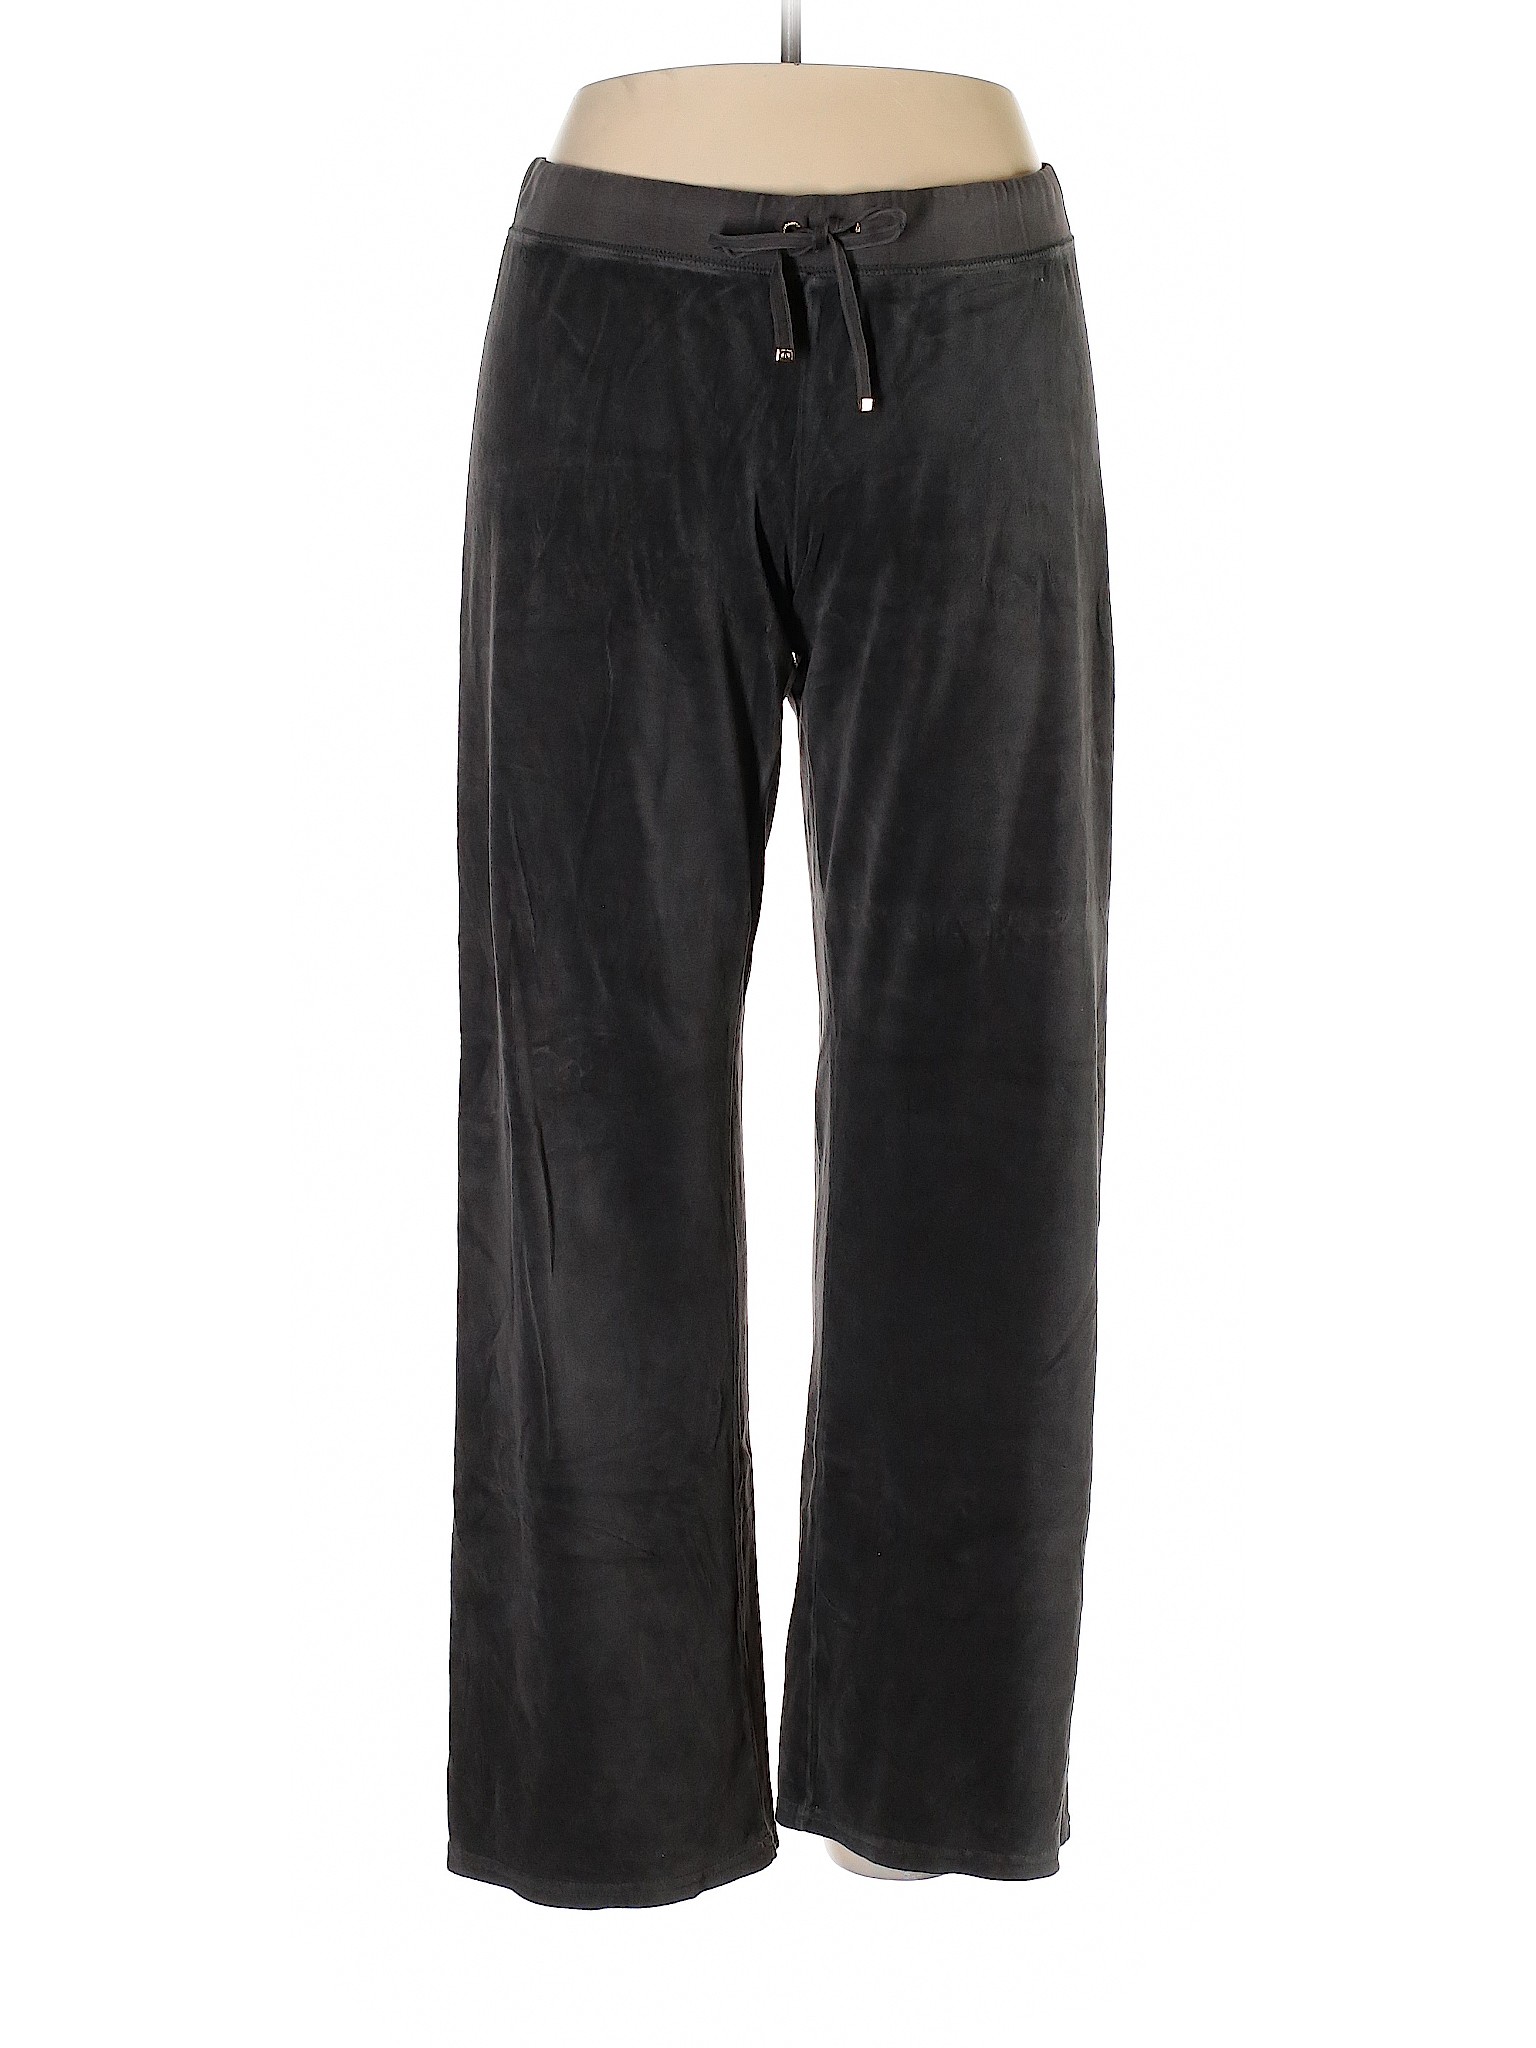 Juicy Couture Women Black Velour Pants XL | eBay